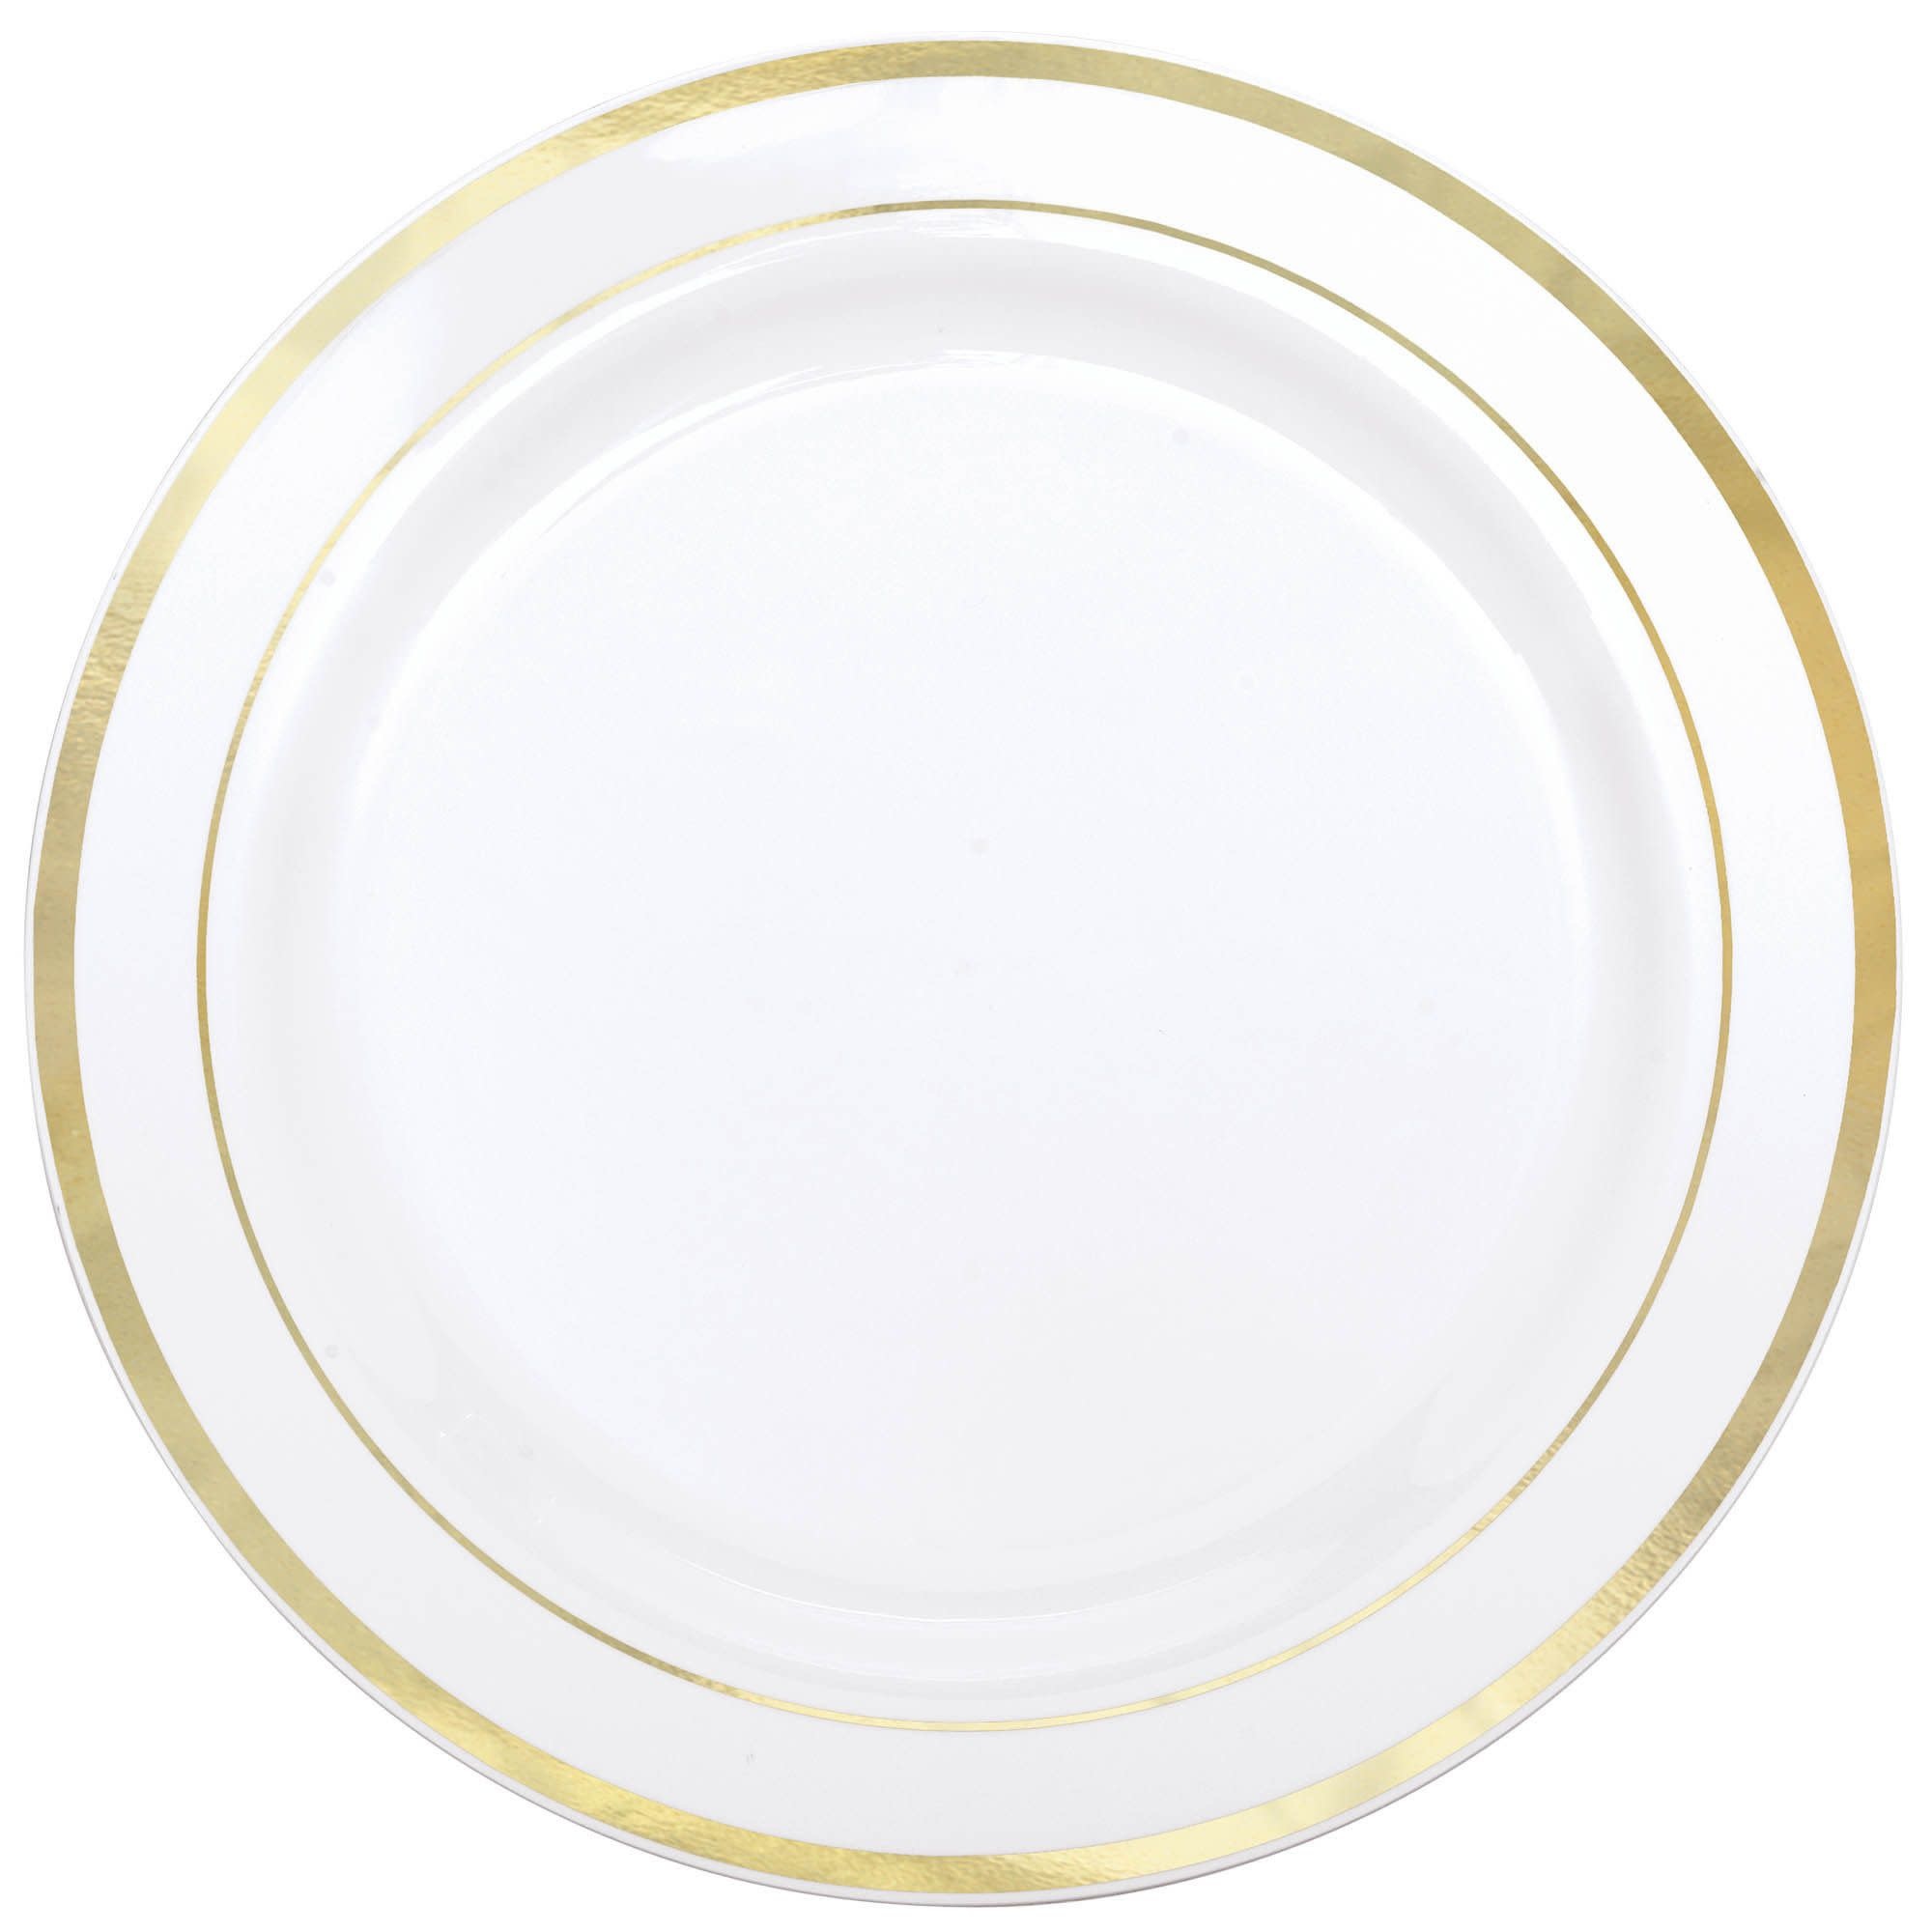 White Premium Plastic Round Plates with Gold Trim, 7 1/2"